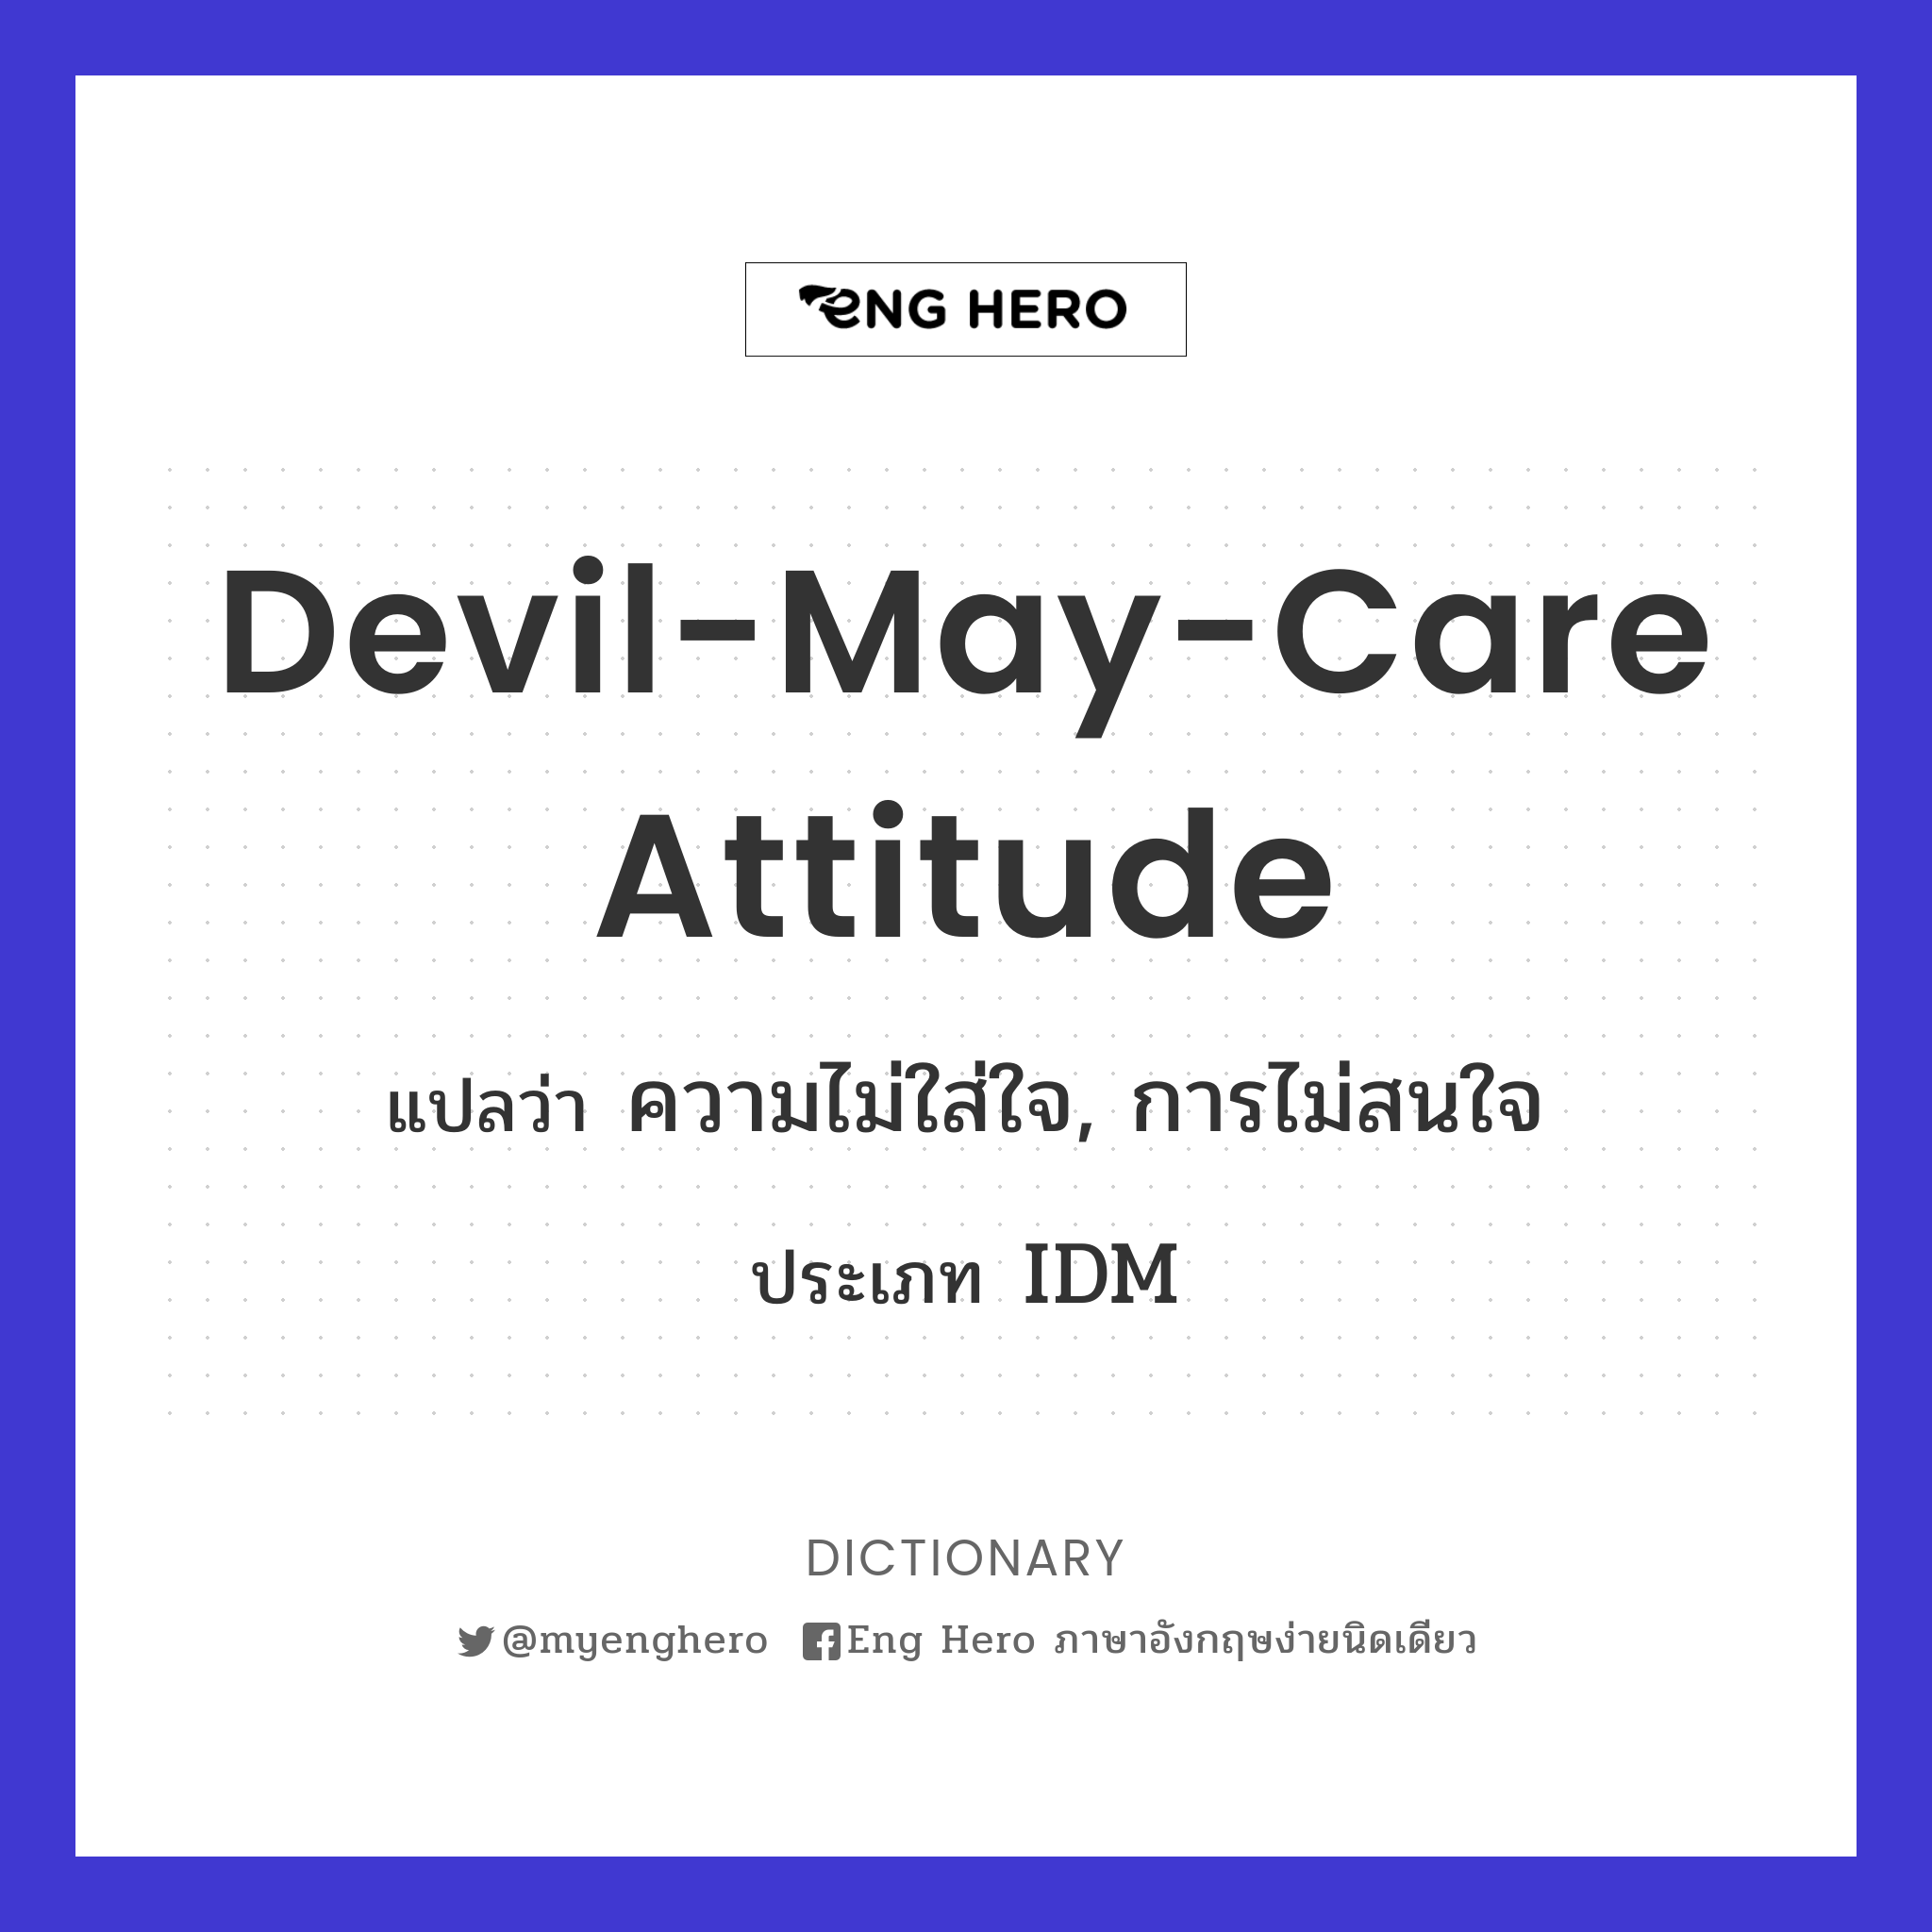 devil-may-care attitude